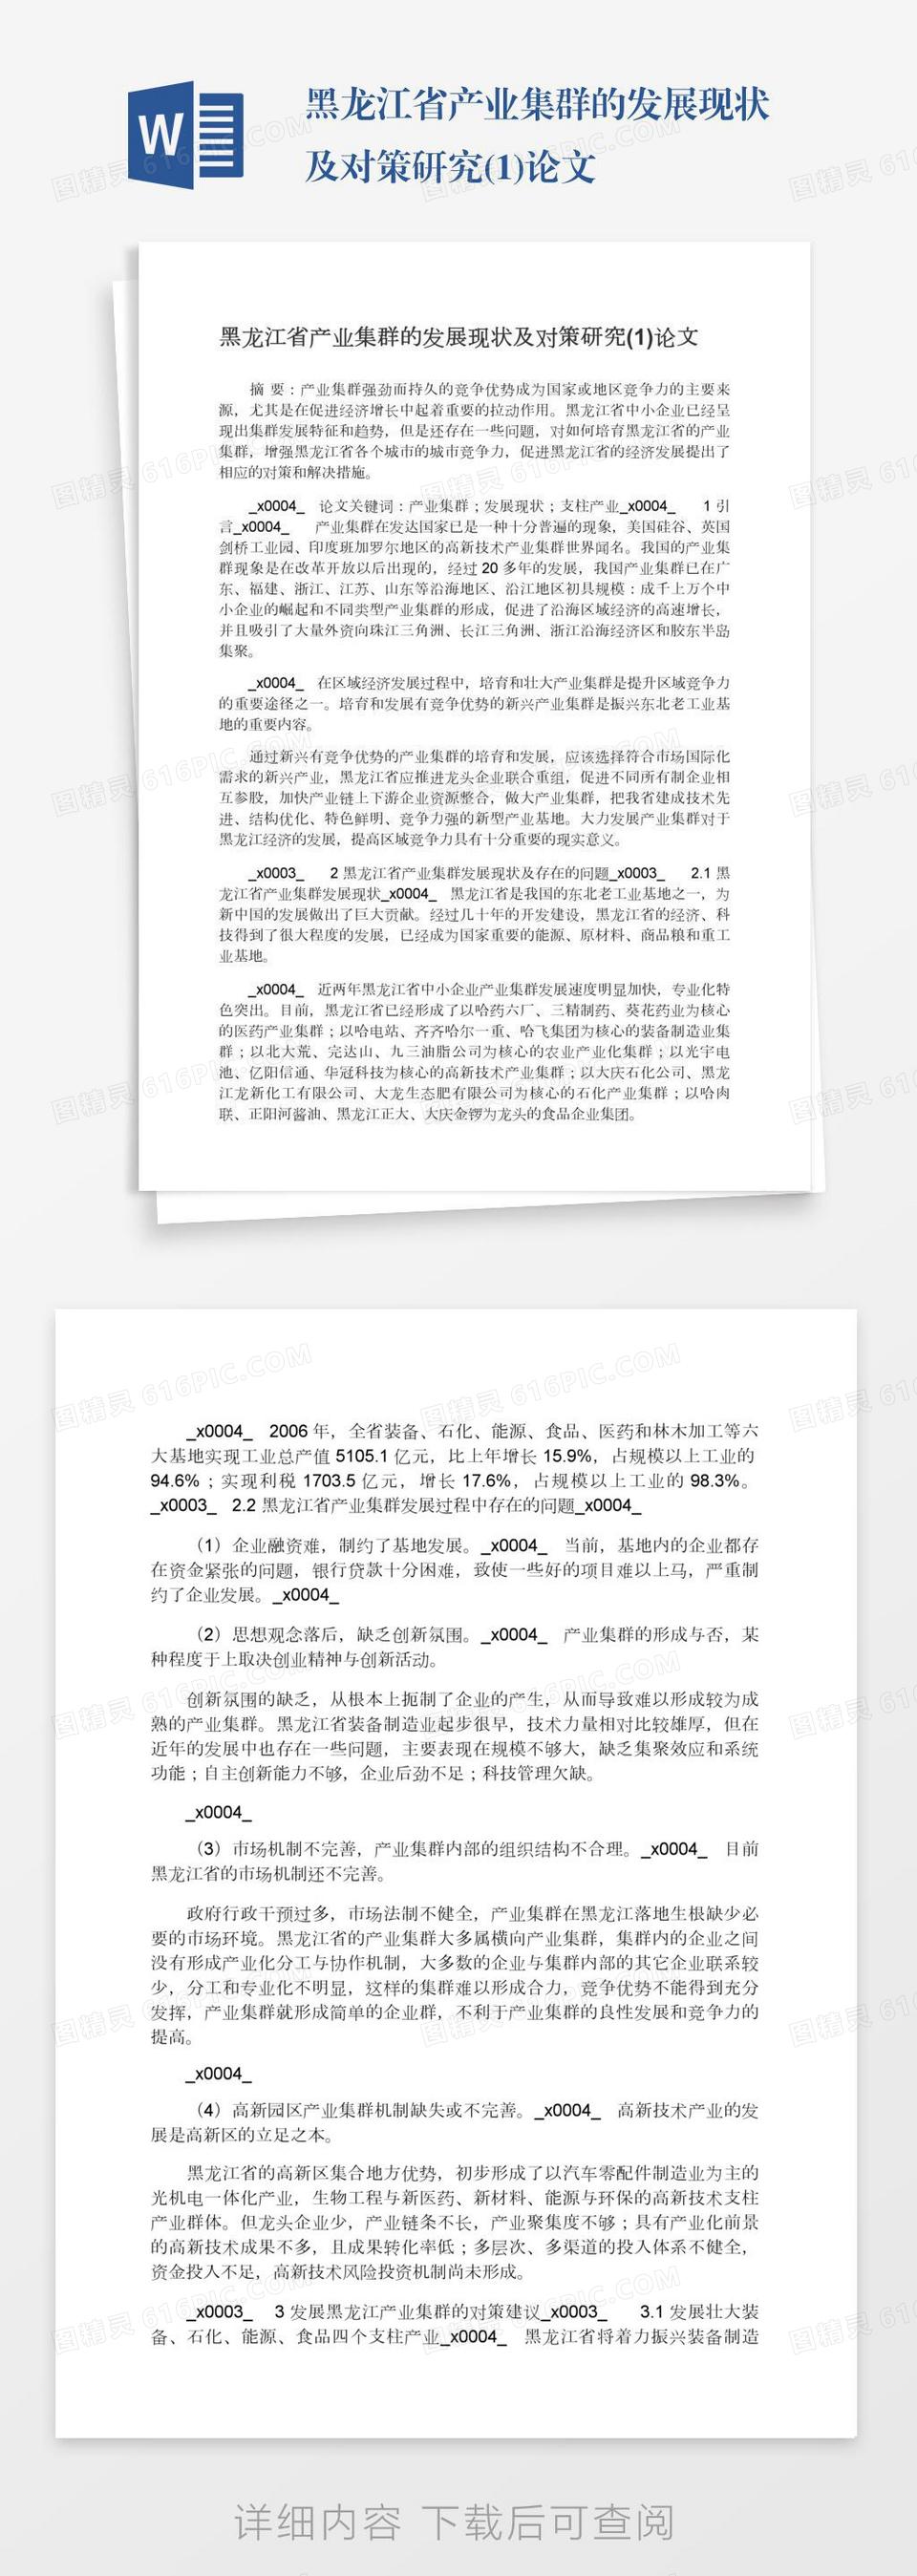 黑龙江省产业集群的发展现状及对策研究(1)论文